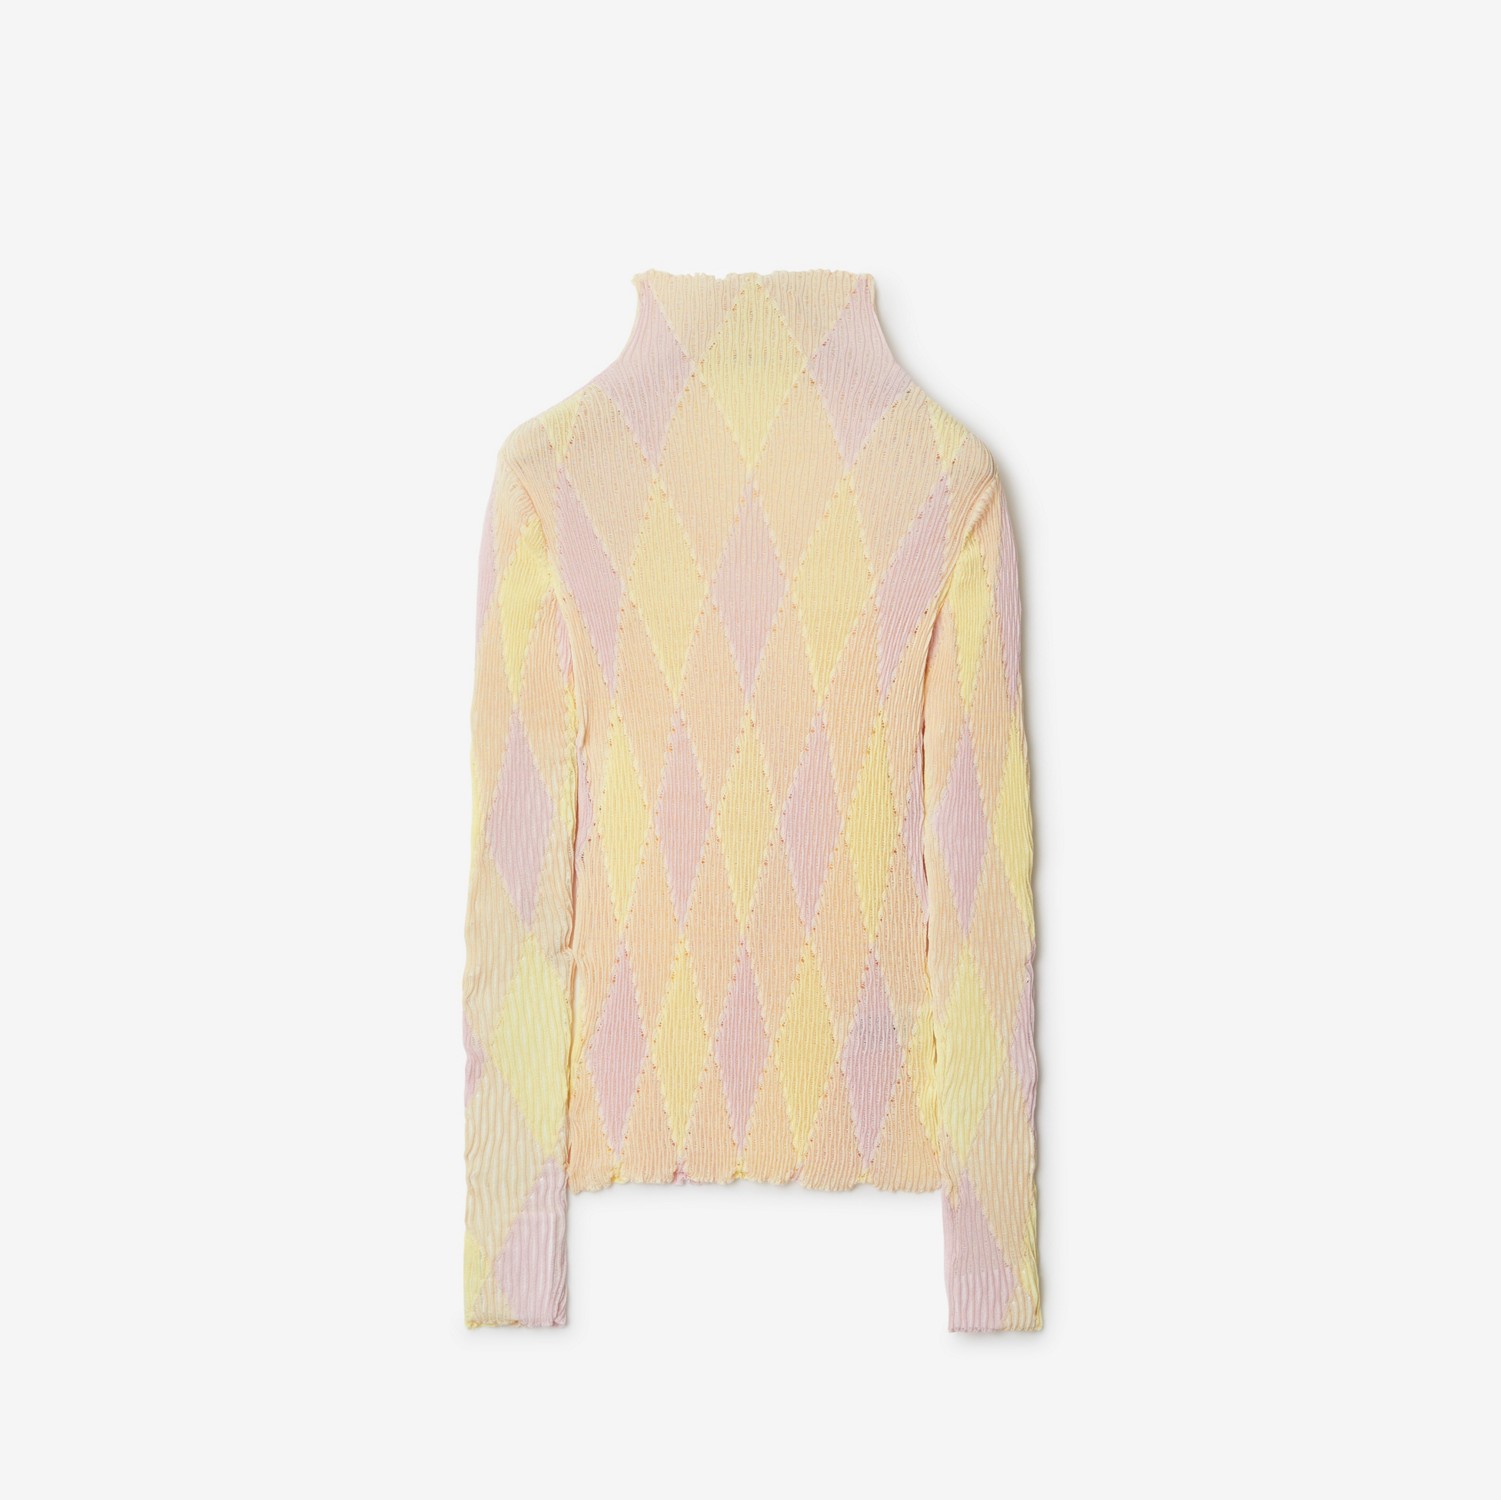 Baumwoll-Seiden-Pullover im Argyle-Design